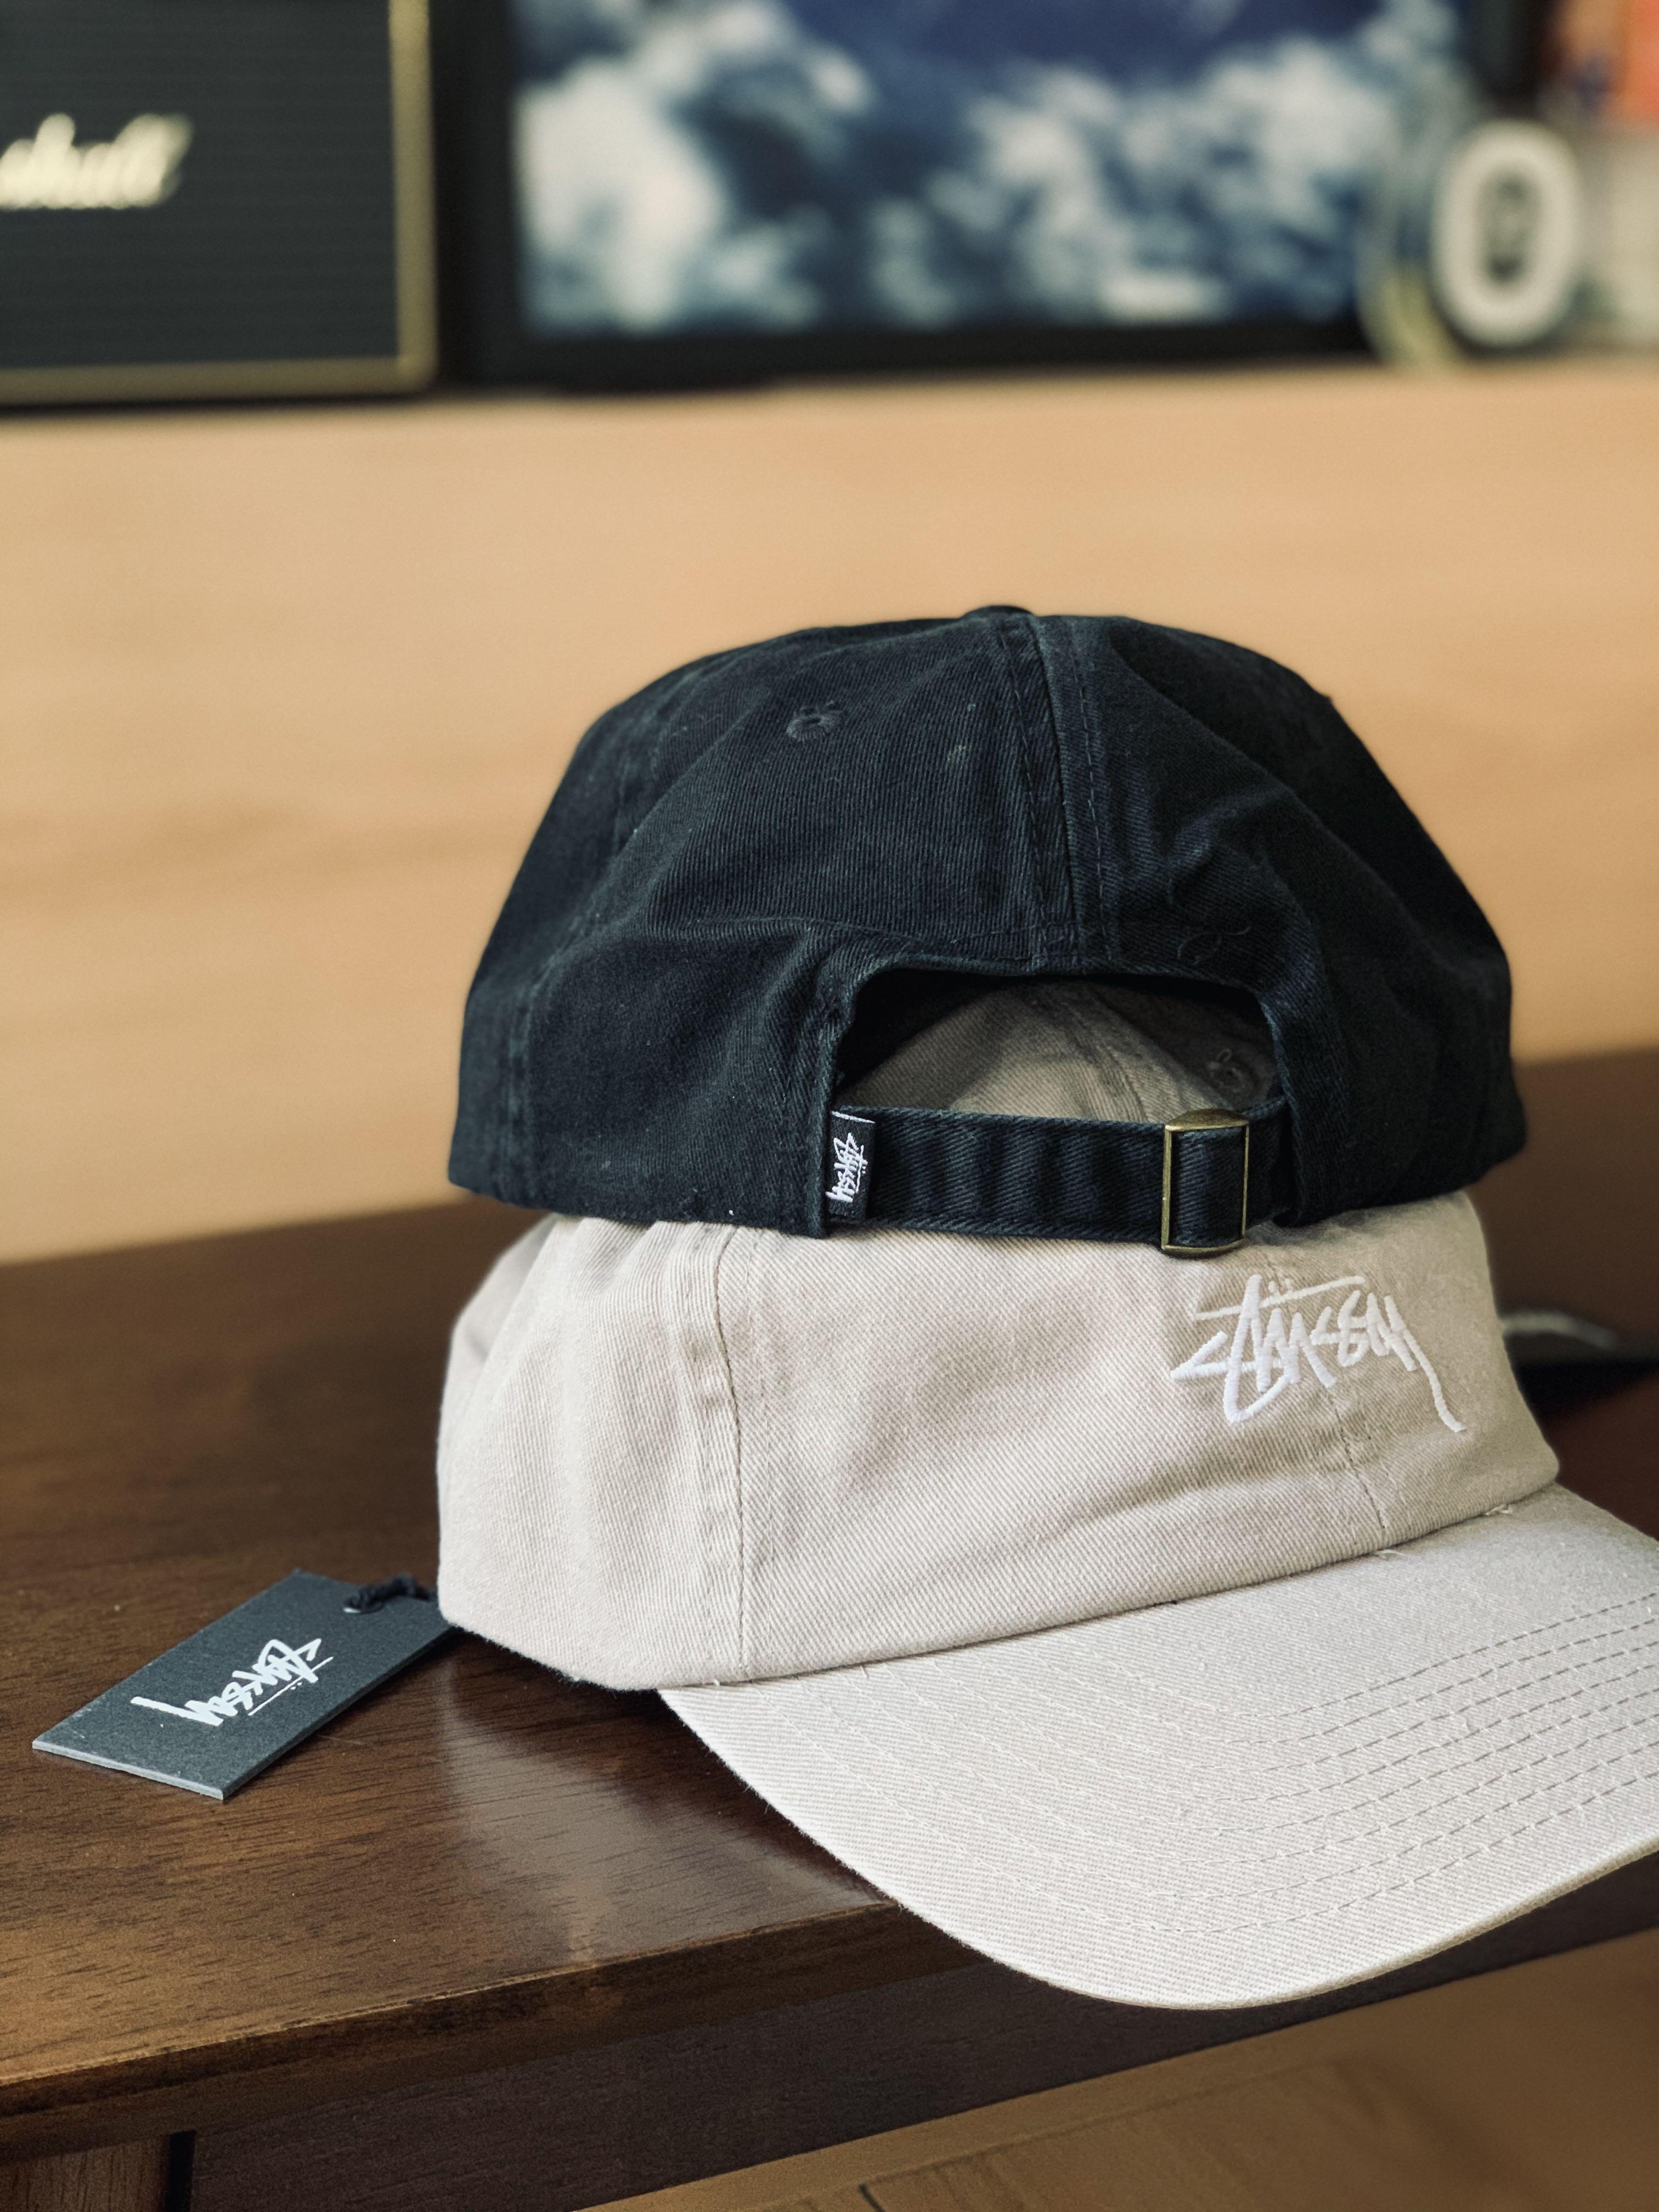 ✨現貨✨Stussy Baseball Cap 全新Stussy cap帽, 男裝, 手錶及配件 